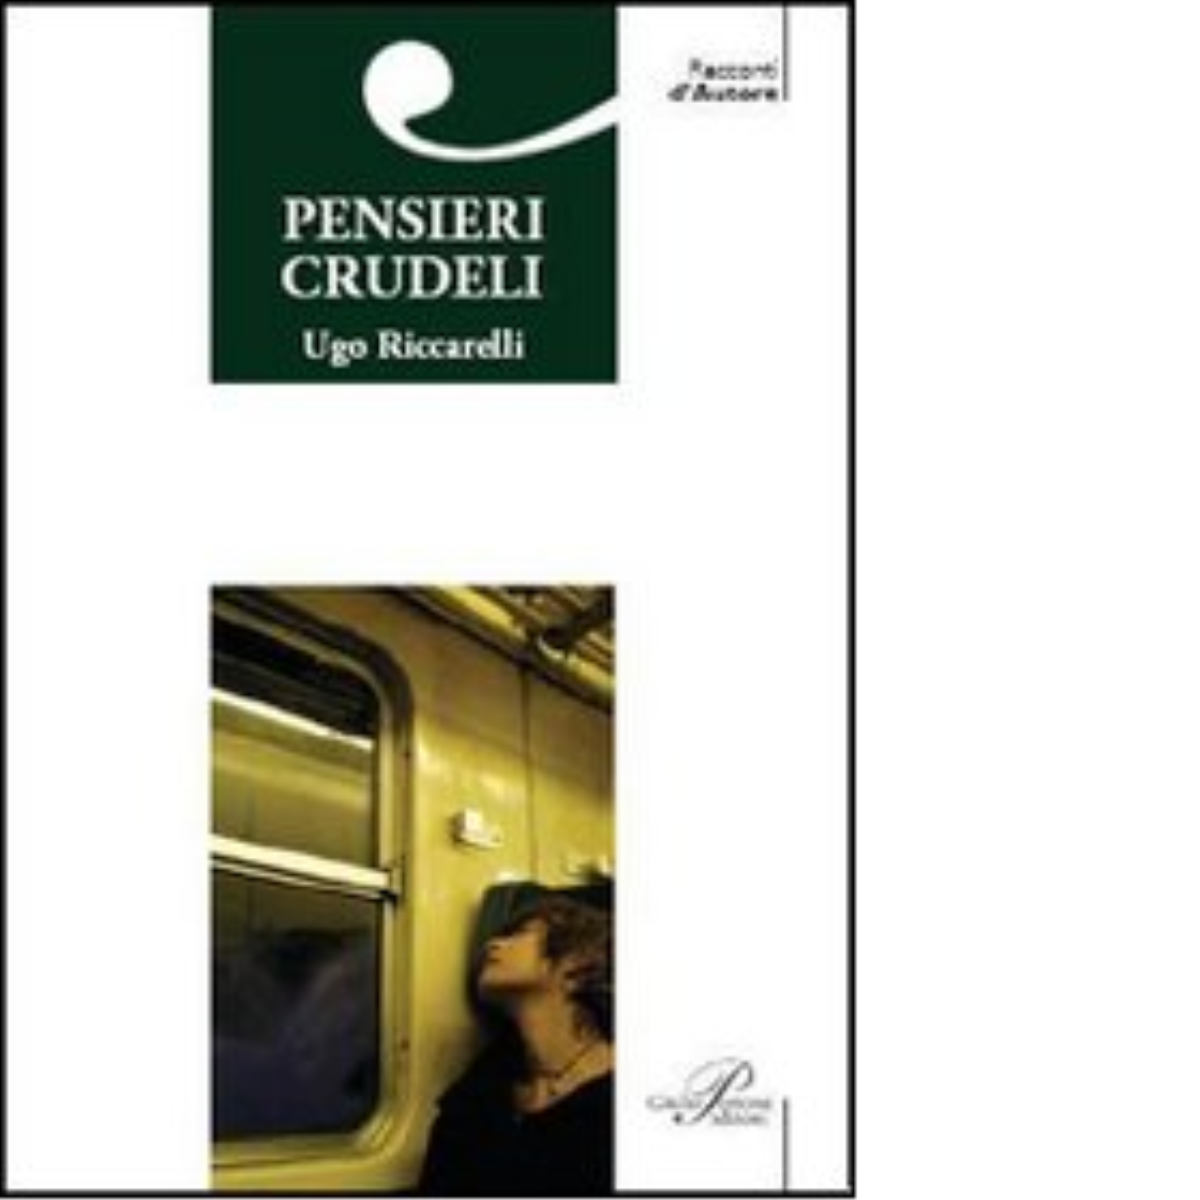 Pensieri crudeli di Ugo Riccarelli - Perrone editore, 2006